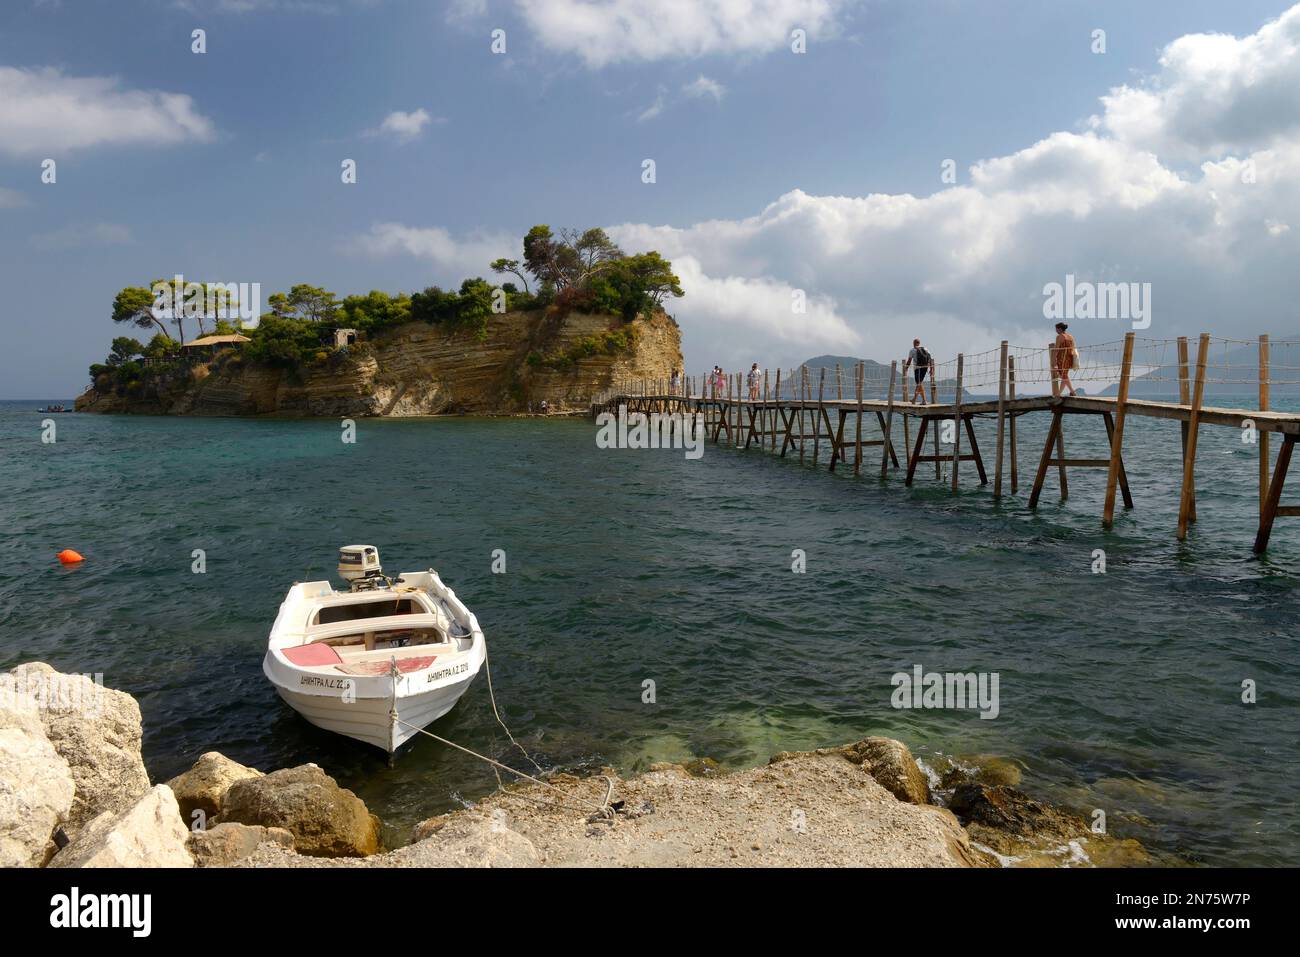 Vue sur l'île d'Agios Sostis, l'île de Cameo, l'île de Zakynthos, les îles Ioniennes, la mer Méditerranée, Grèce Banque D'Images